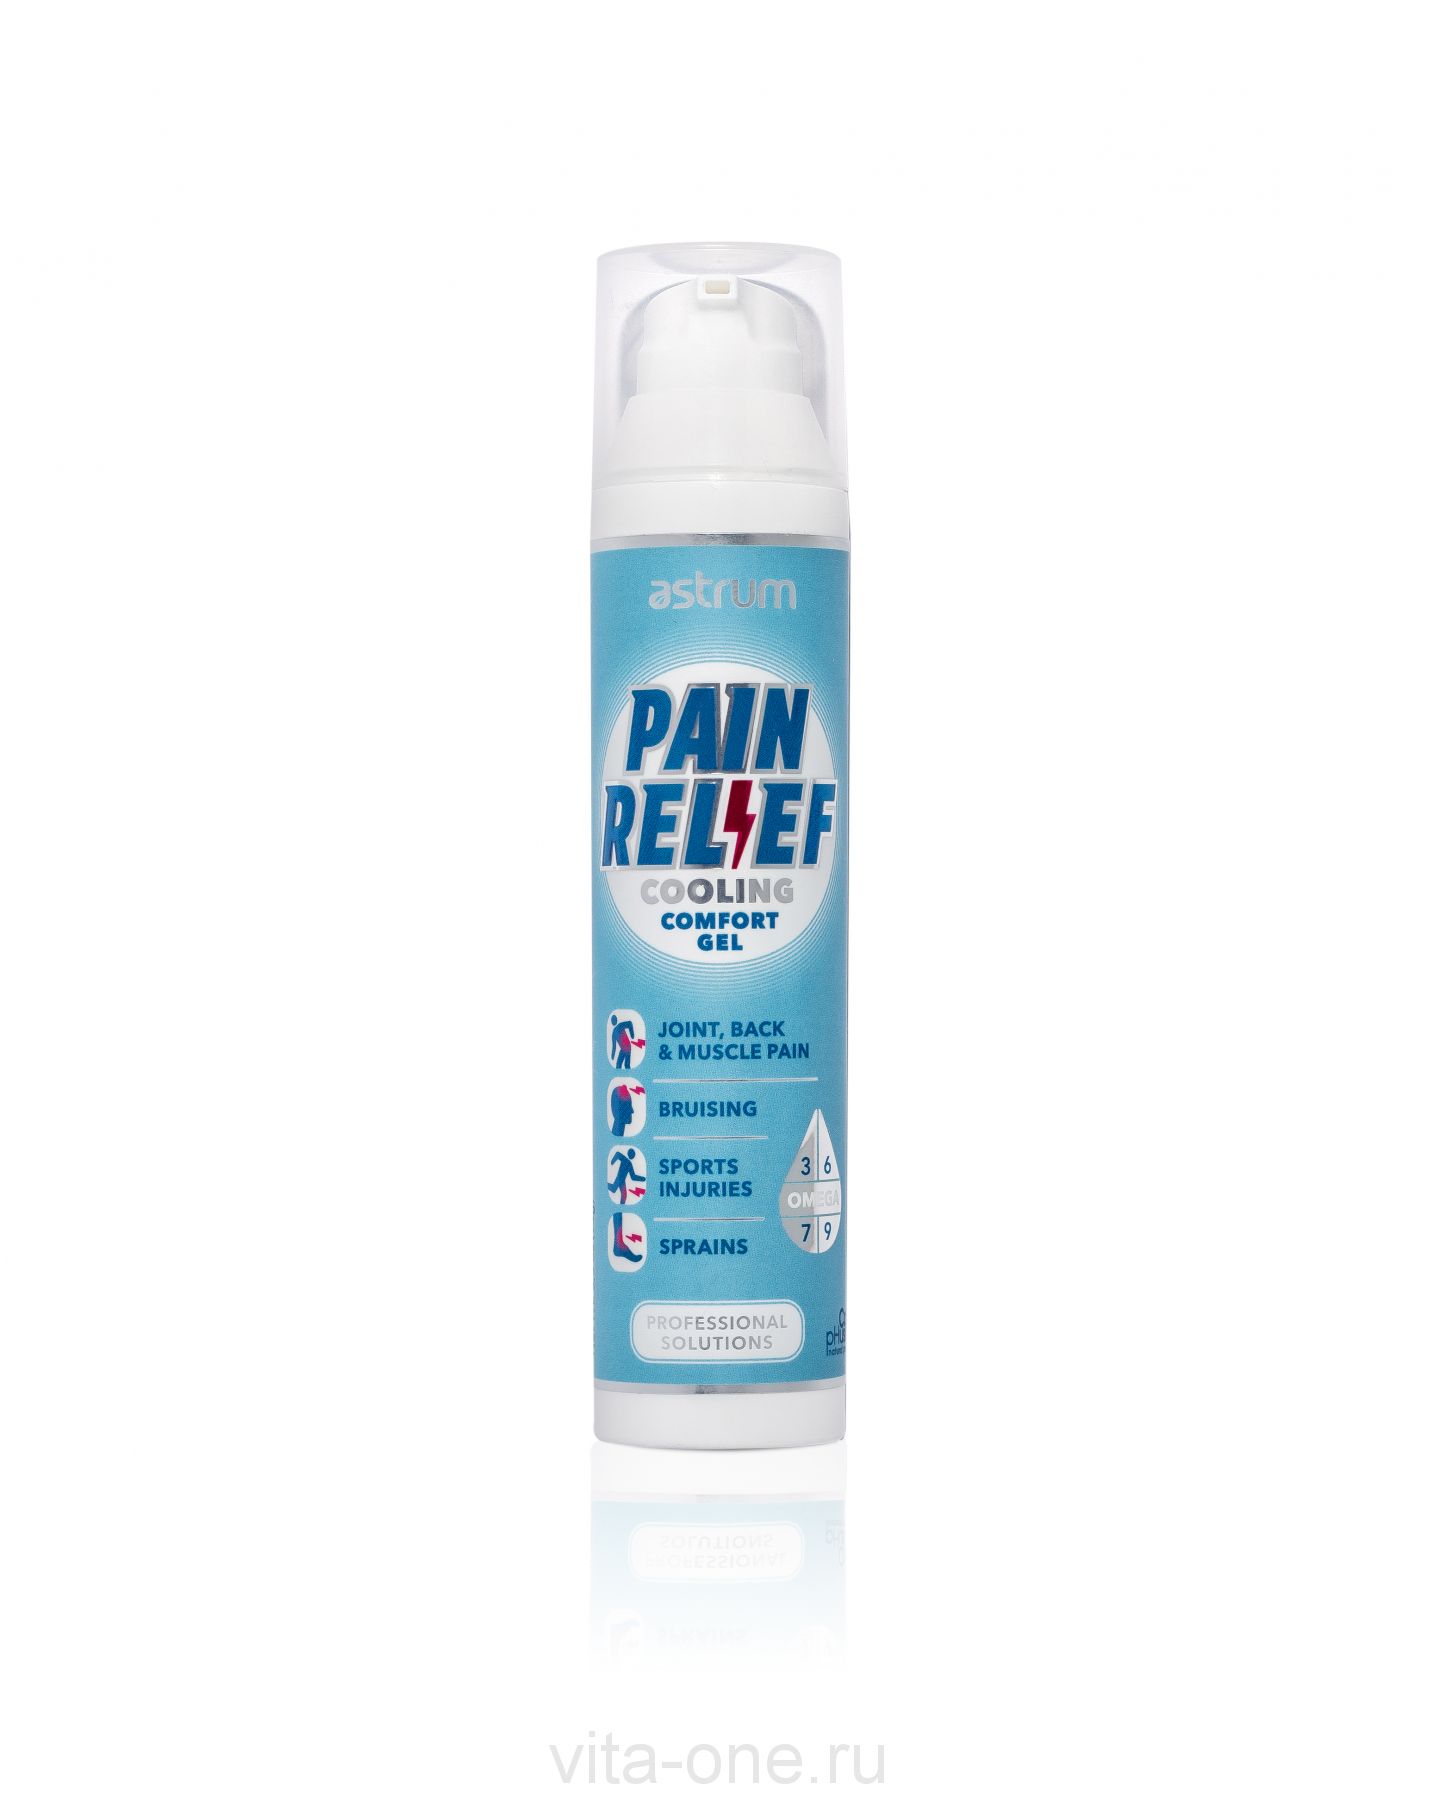 Обезболивающий охлаждающий комфорт-гель pain relief (AIN RELIEF cooling comfort gel)  Astrum (Аструм) 94 г